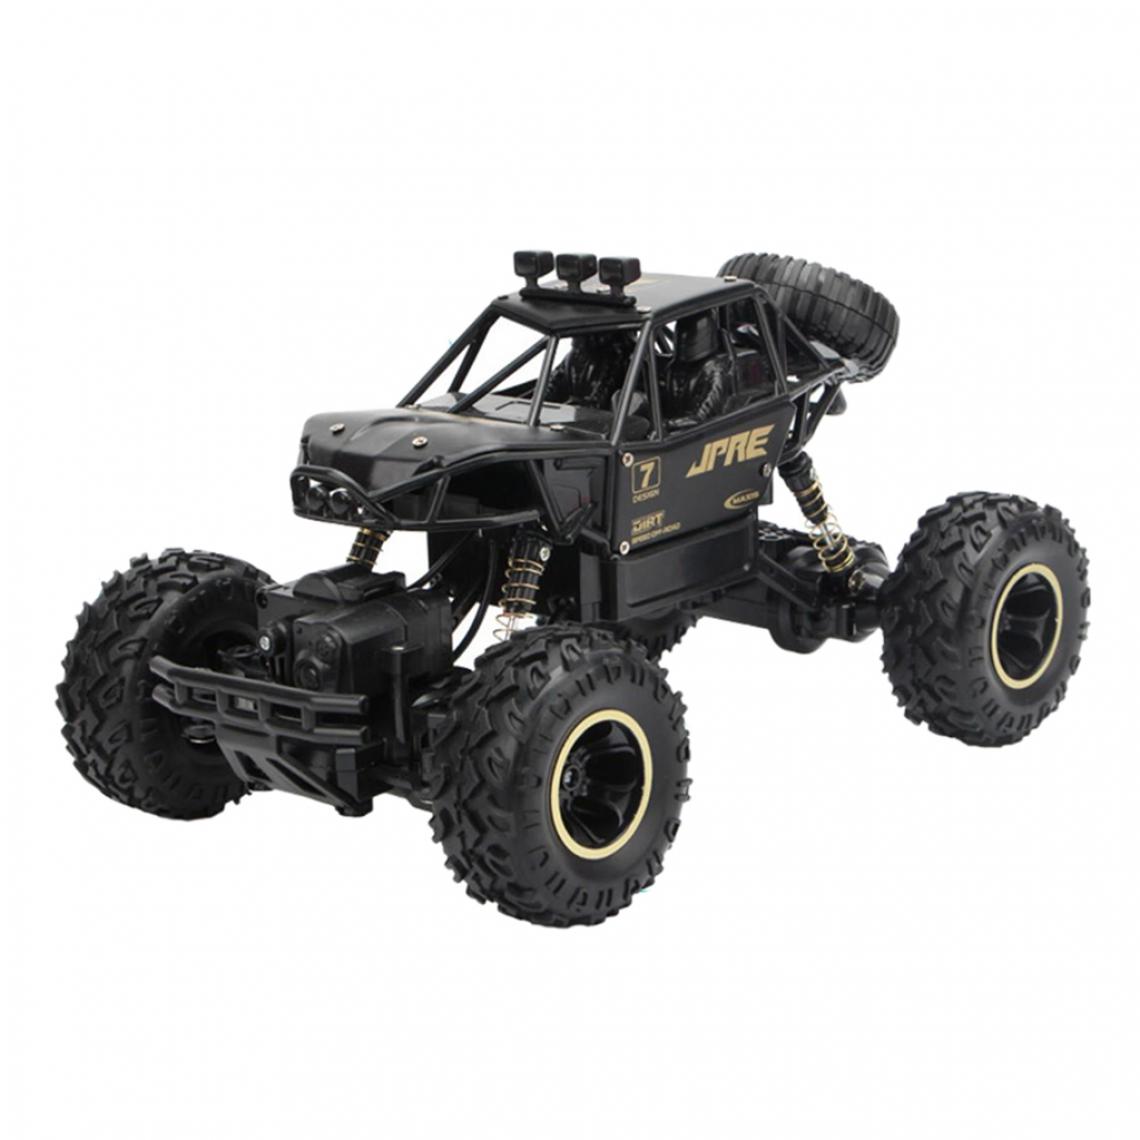 marque generique - 1:16 échelle 4WD RC Voiture 2.4G Radiocommande Monster Truck Jouets Pour Enfants Argent - Accessoires maquettes